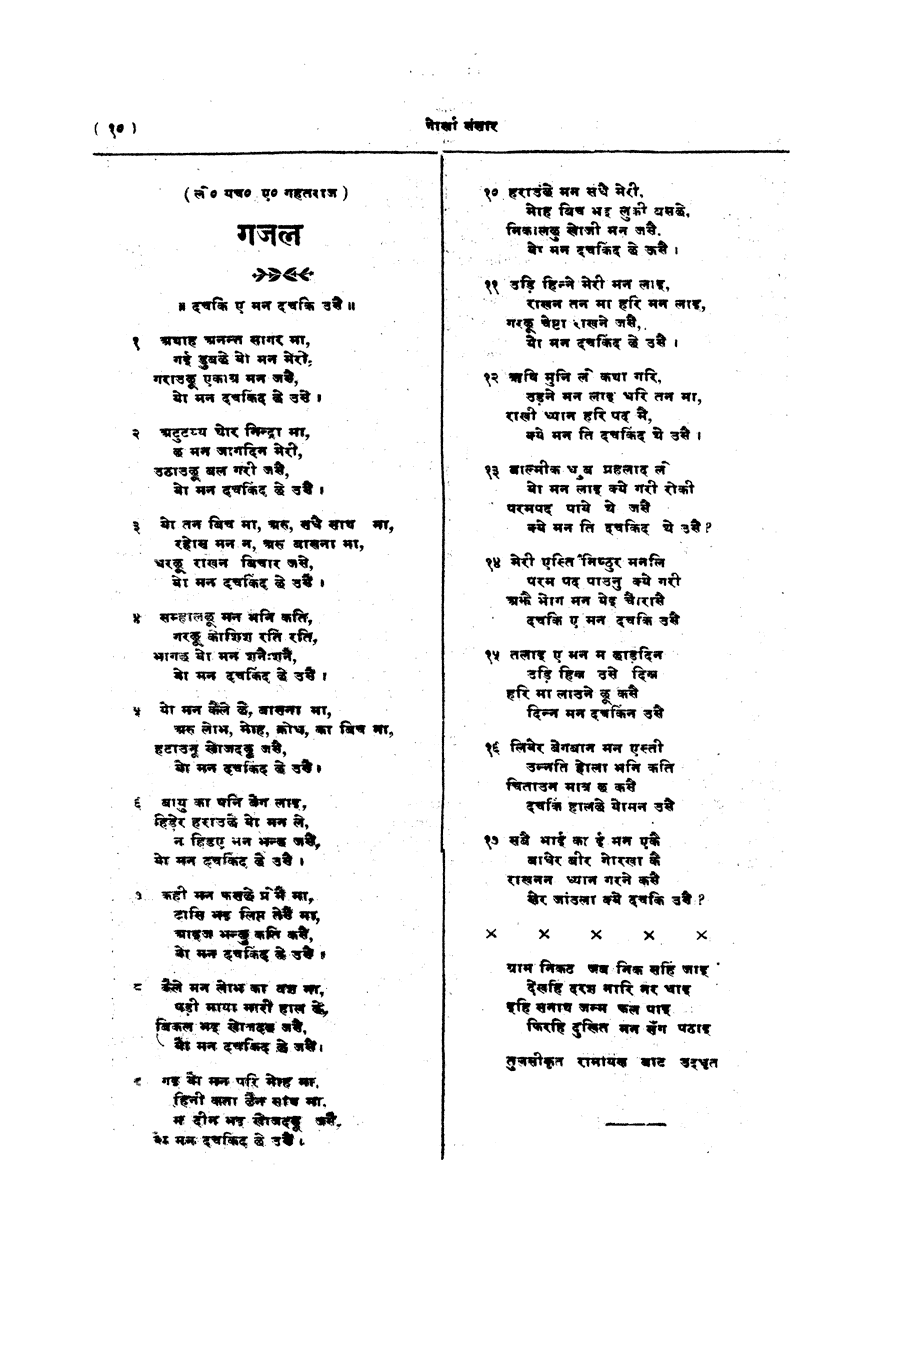 Gorkha Sansar, 13 April 1928, page 10